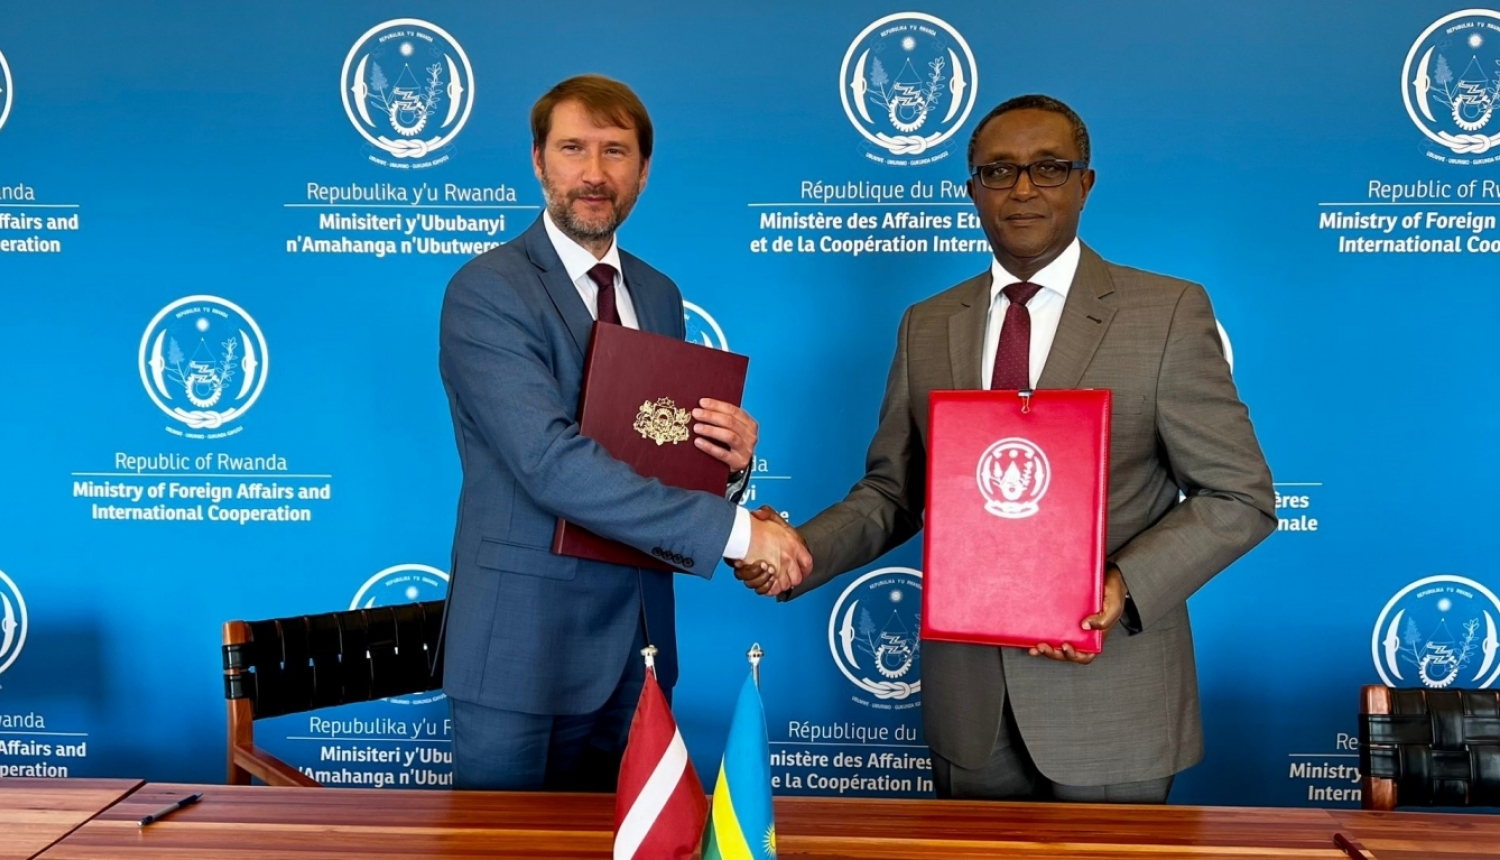 Latvija un Ruanda apņemas veicināt ekonomisko sadarbību un paraksta memorandu par politiskajām konsultācijām